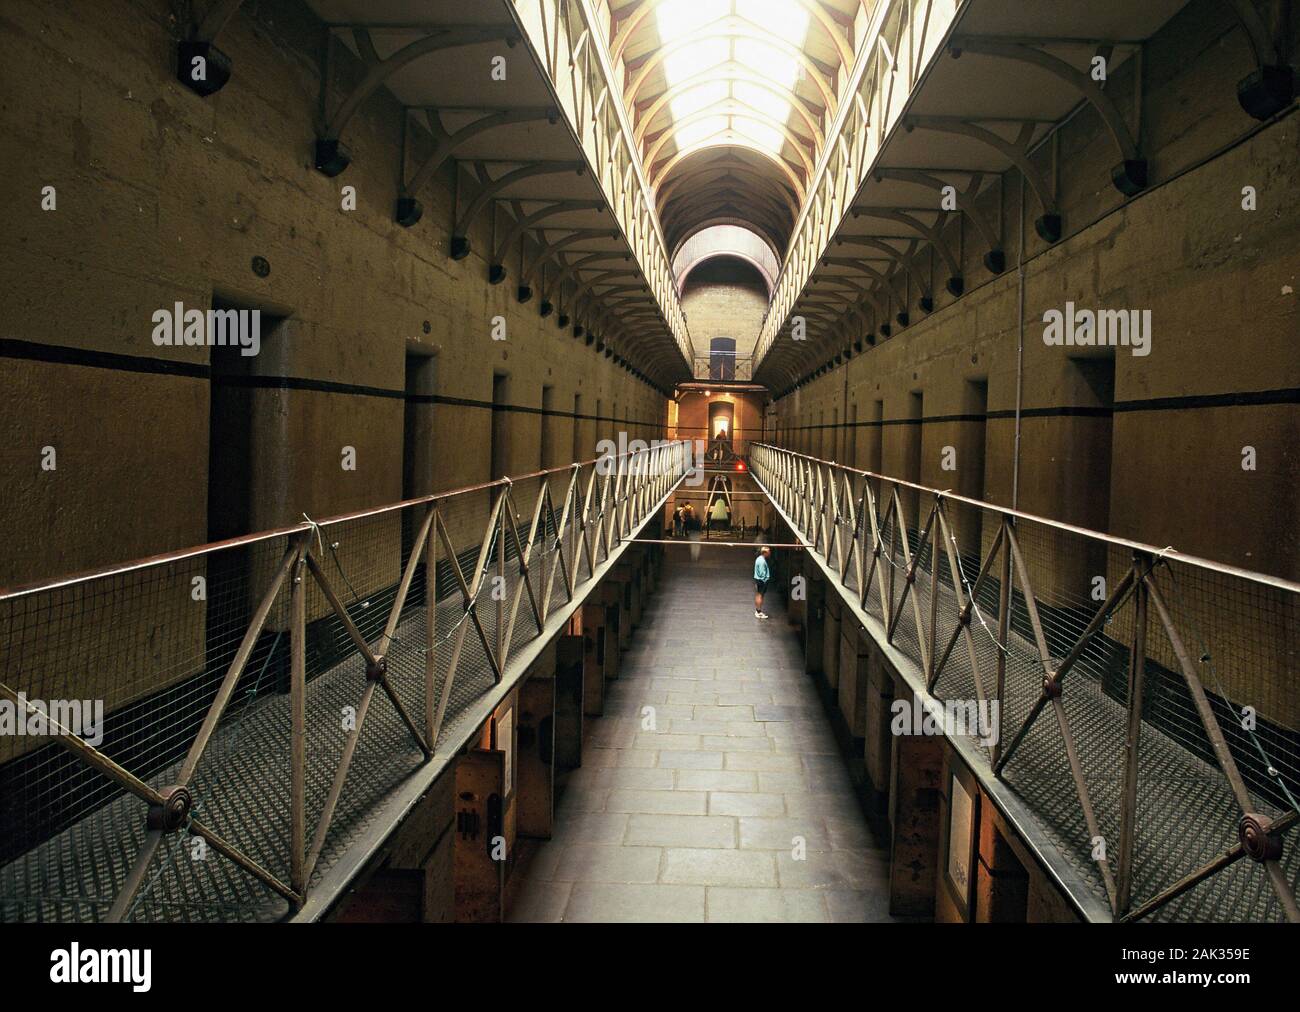 Innenansicht der ehemaligen Gefängnis, das Old Melbourne Gaol in Melbourne, die Hauptstadt des australischen Staat Victoria, Australien. (Undatiertes Foto) Stockfoto